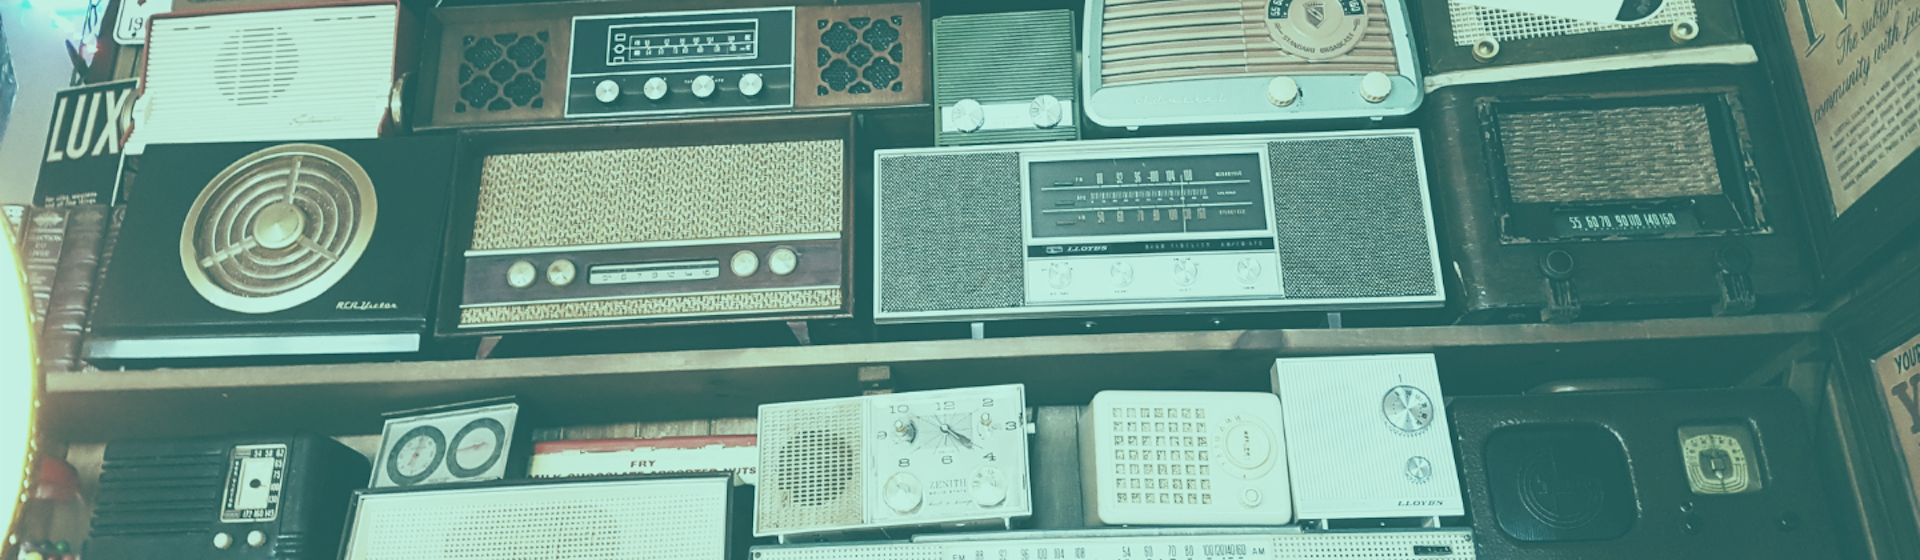 ¿Qué es la radio?: conoce por qué es el medio de comunicación más usado